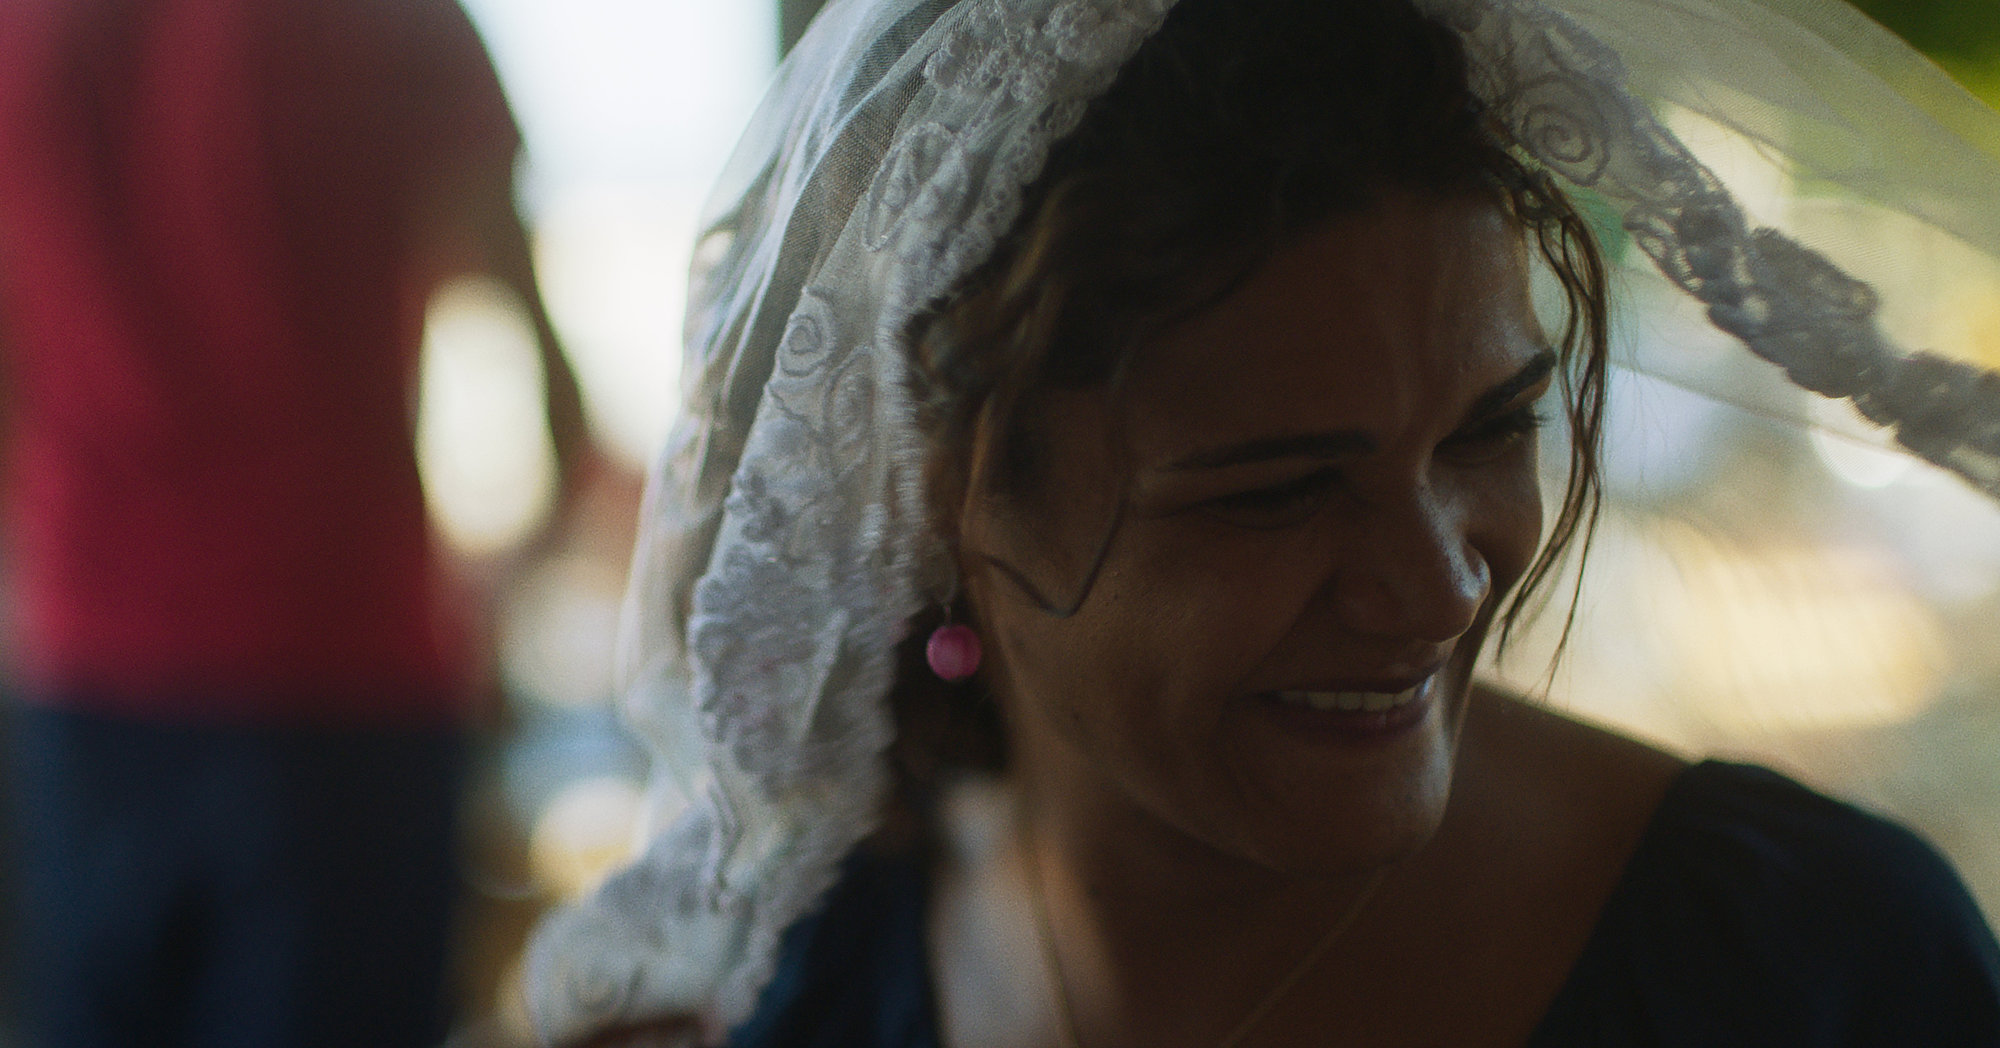 Cena do filme Paloma, mostra a protagonista, uma mulher negra, sorrindo com um véu branco na cabeça. 